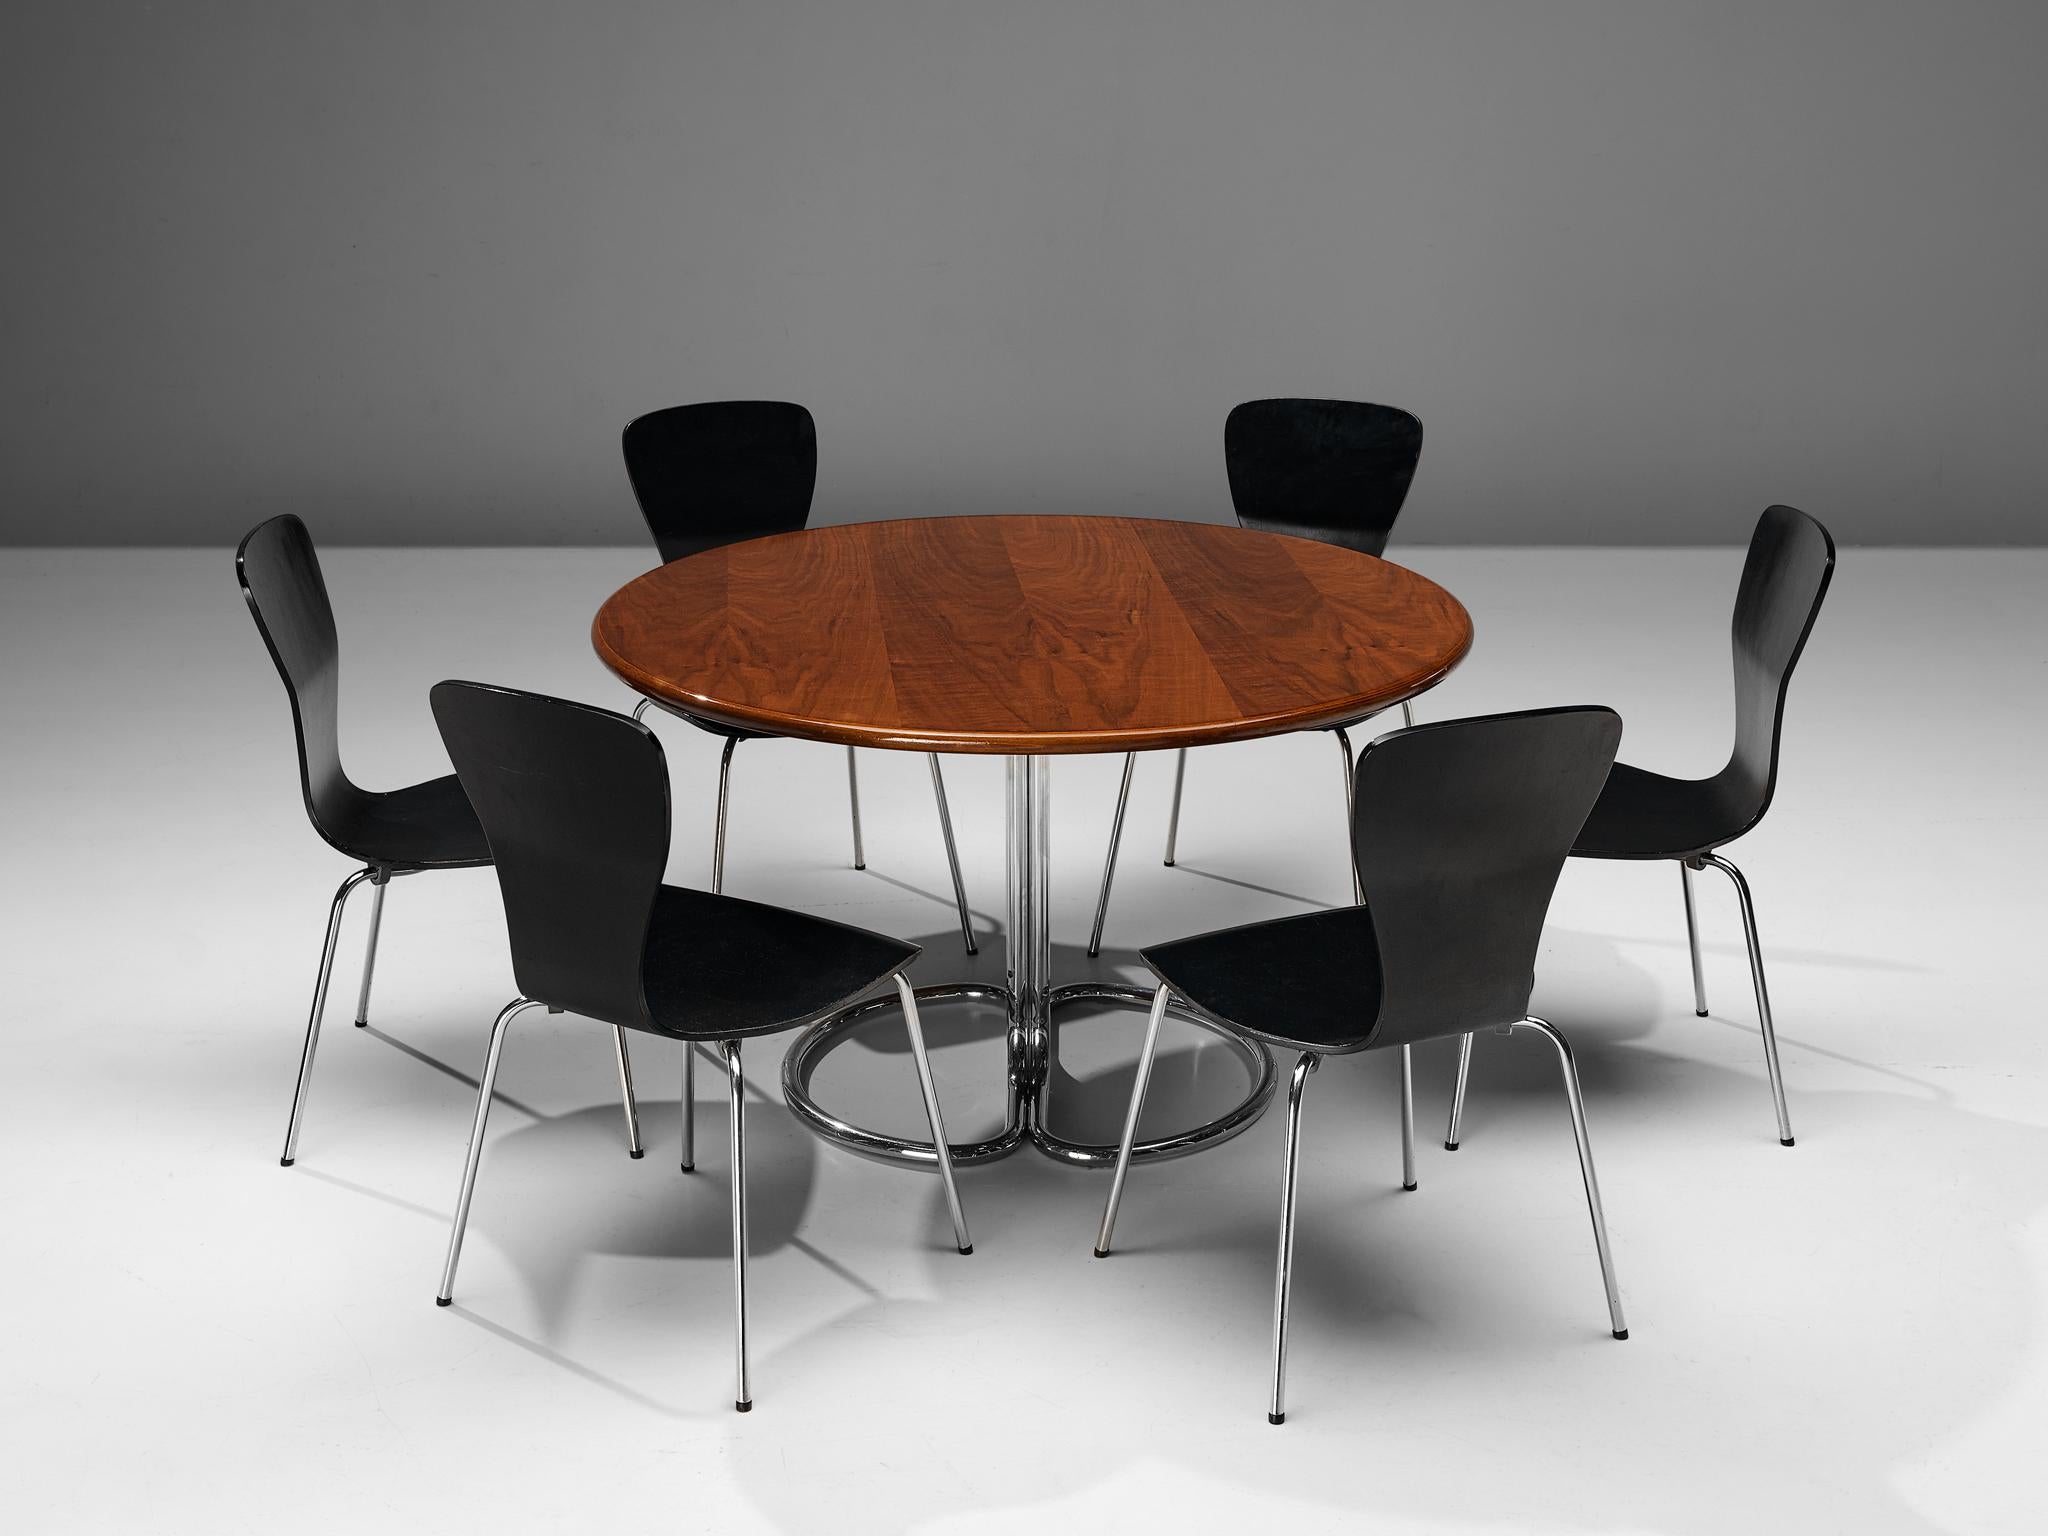 Tapio Wirkkala pour Asko, ensemble de six chaises de salle à manger, contreplaqué, acier nickelé, Finlande, années 1950
 
Magnifique ensemble de chaises 'Nikke' conçu par le designer finlandais Tapio Wirkkala. Ce modèle est un merveilleux exemple